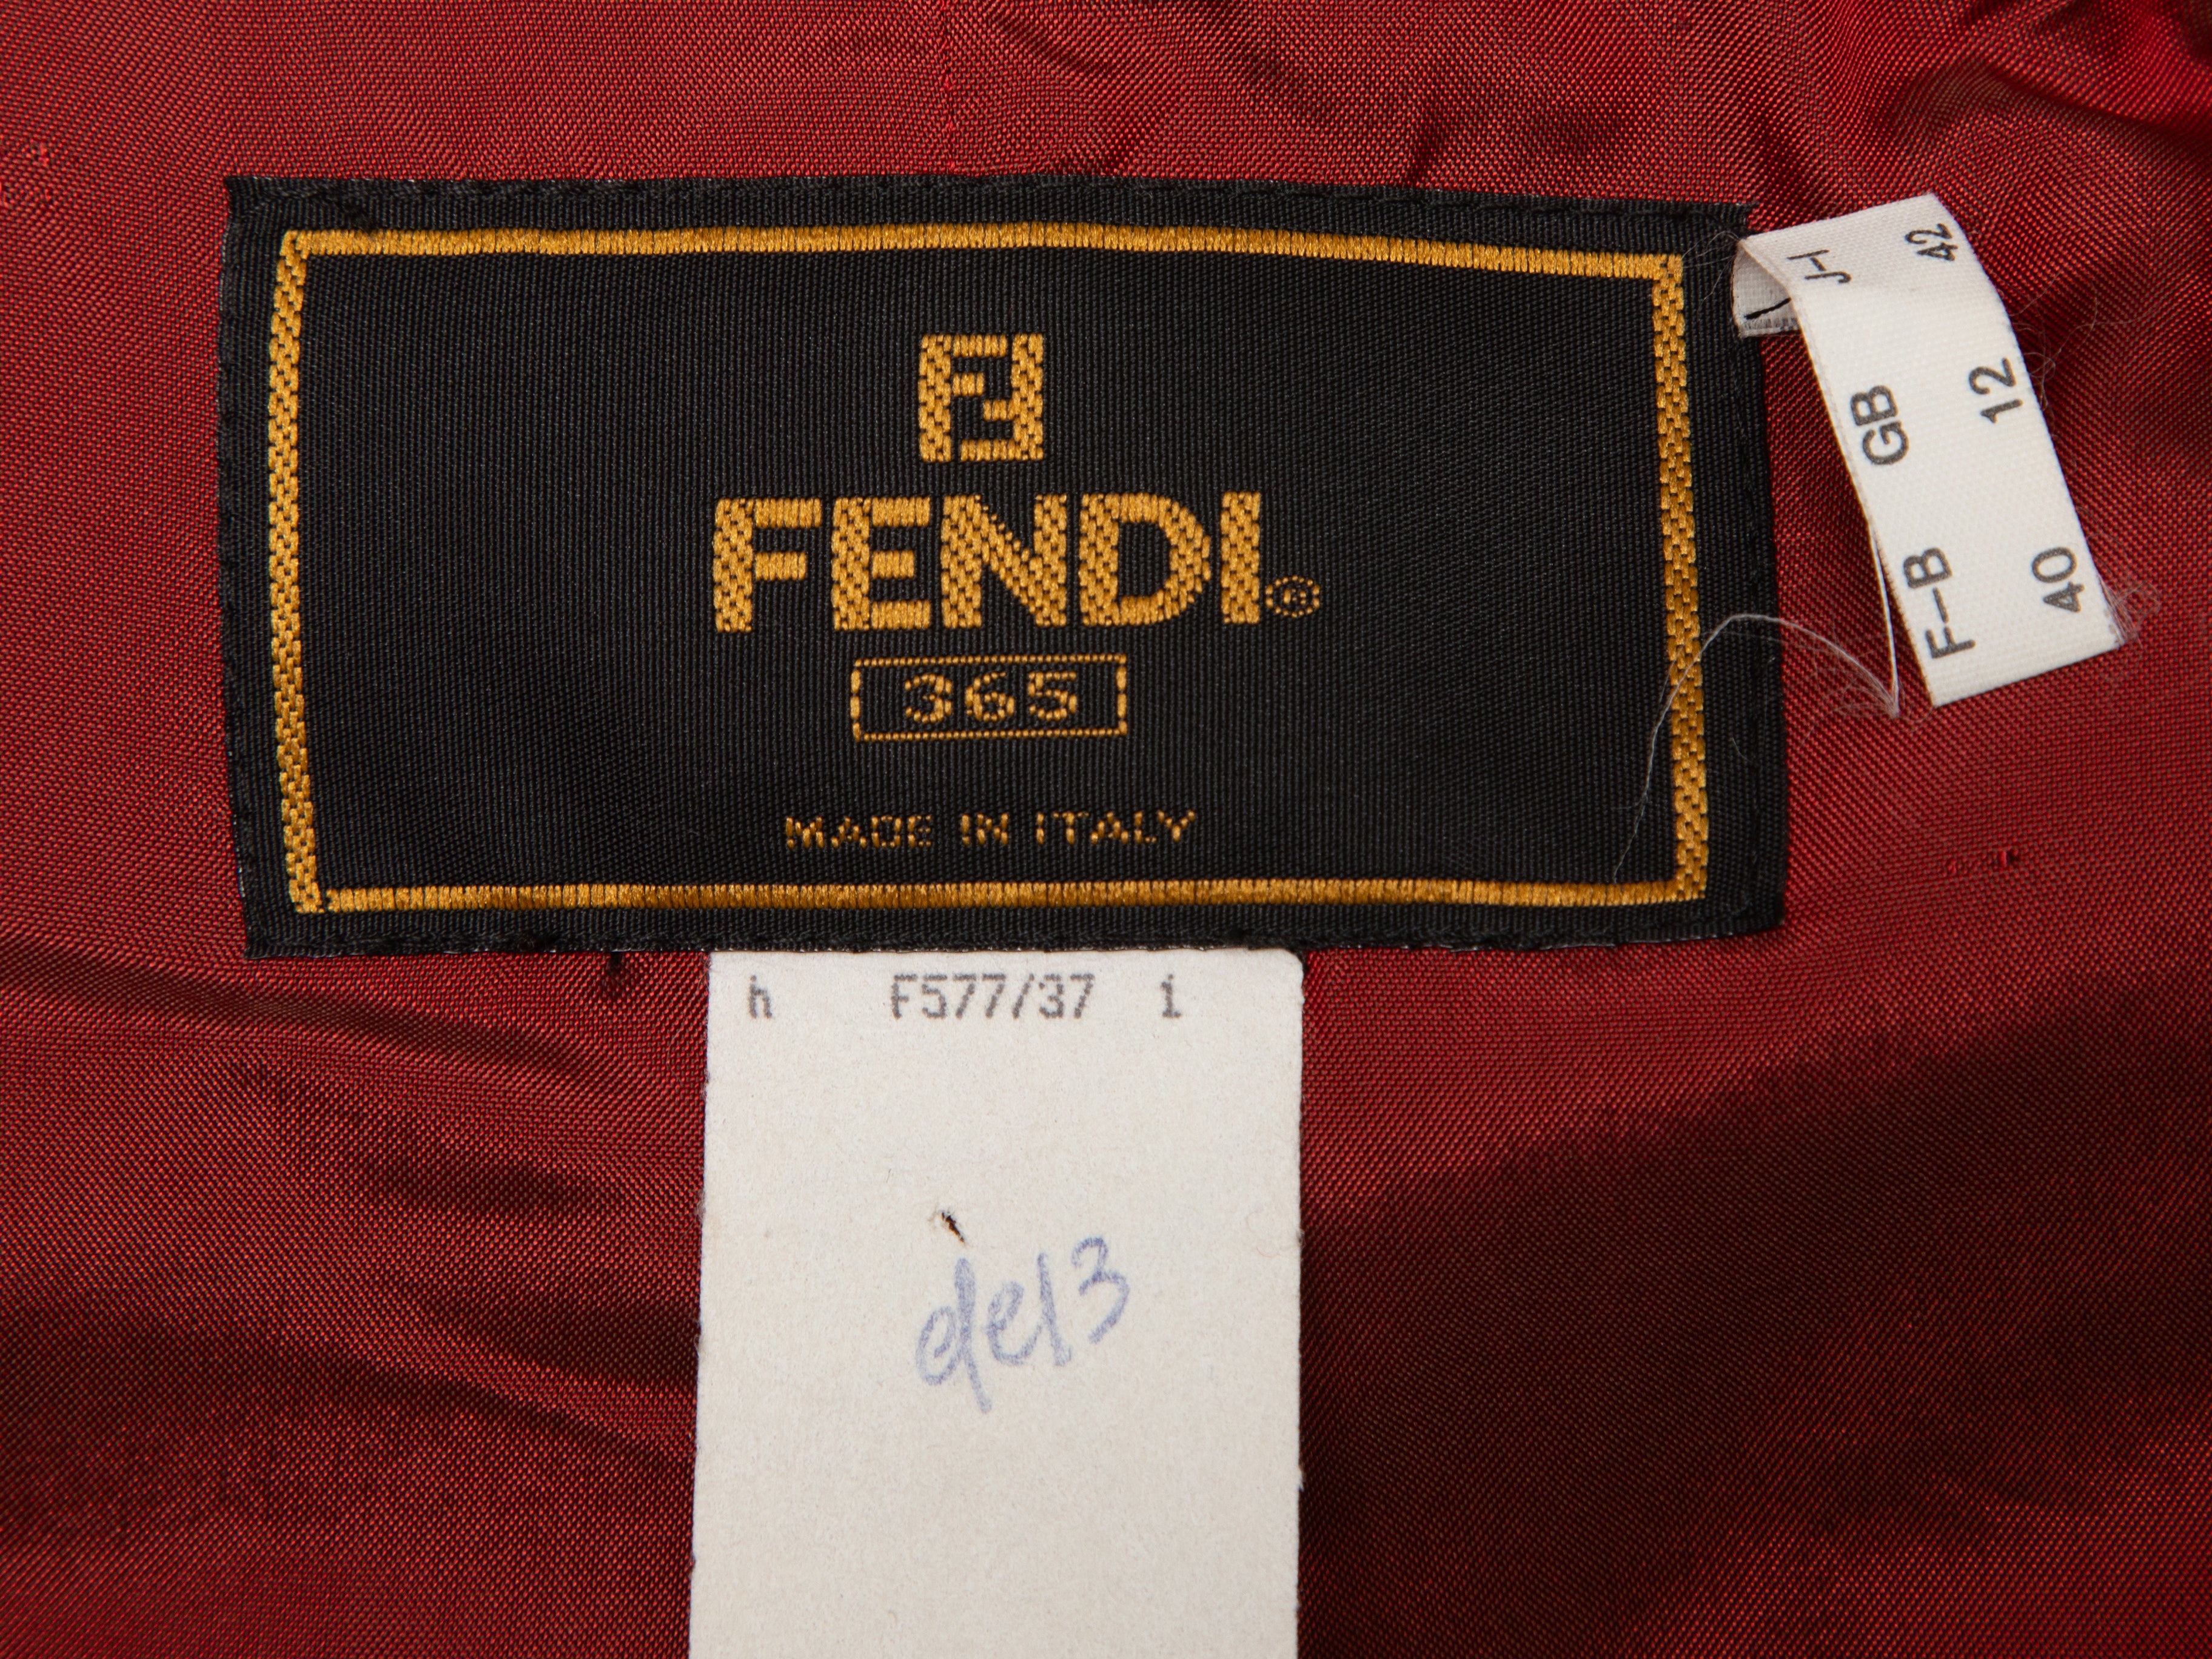 Vintage Red Fendi Jacquard Jacket Size EU 40 - Designer Revival